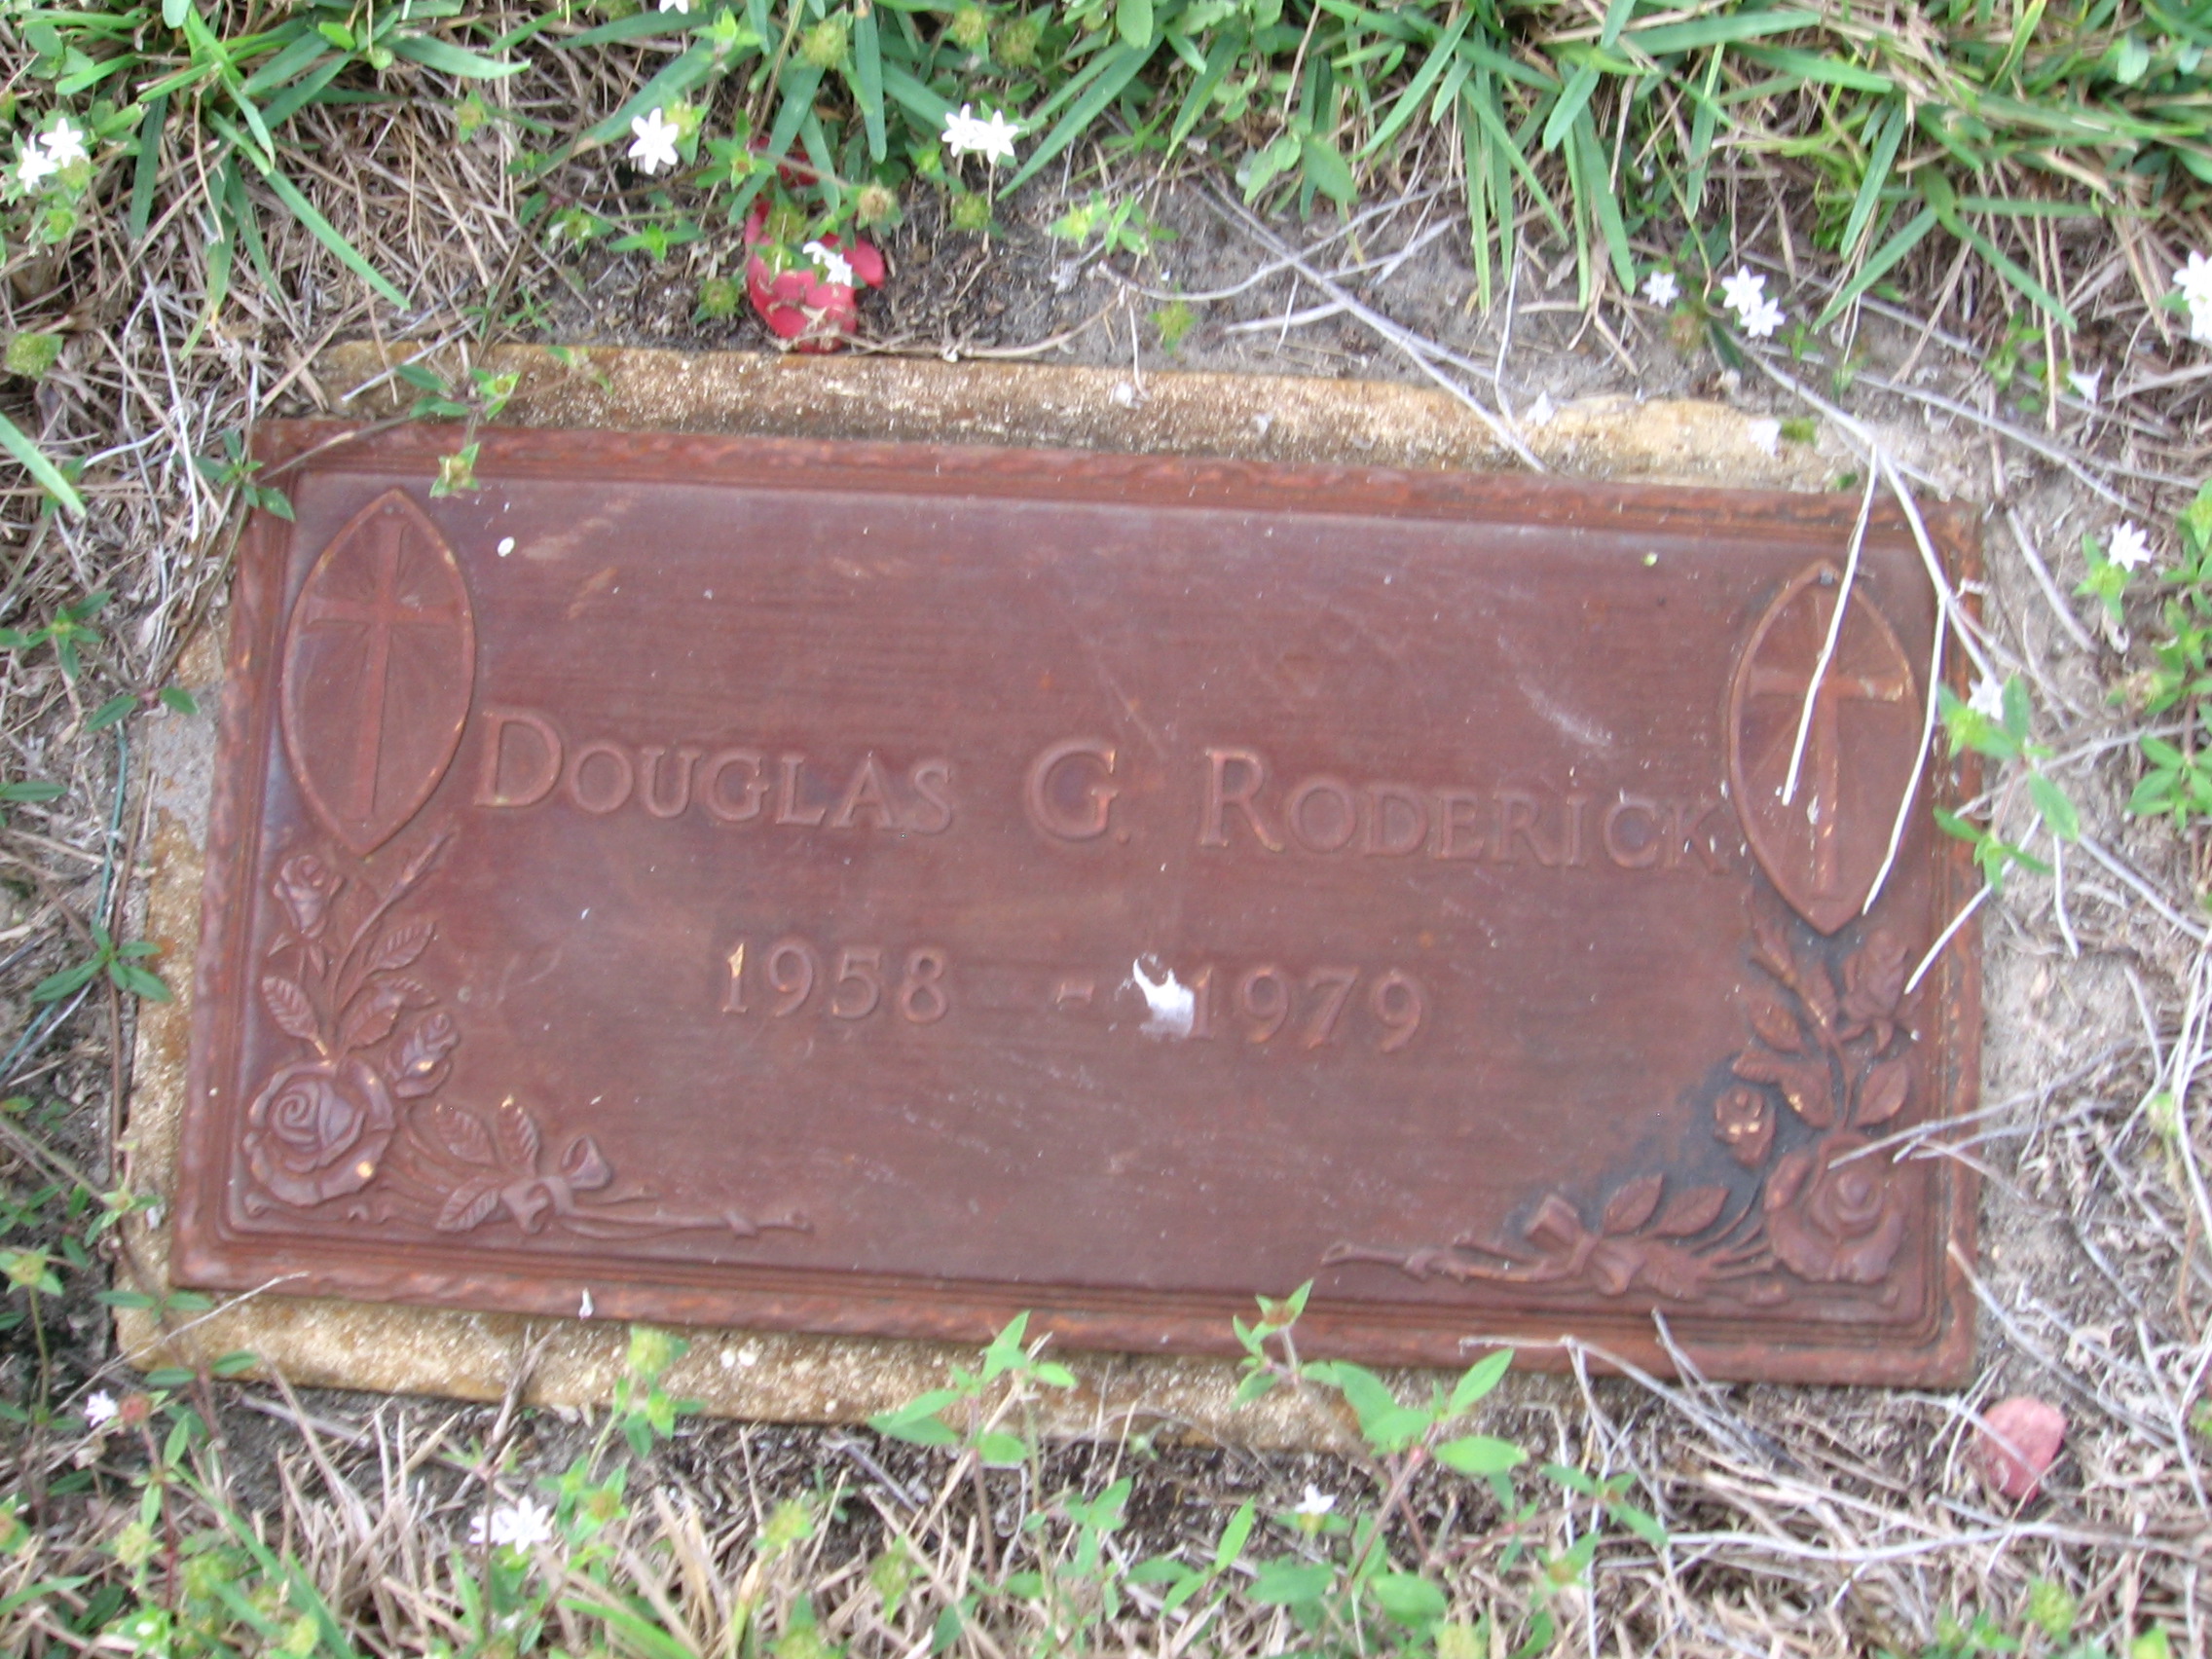 Douglas G Roderick